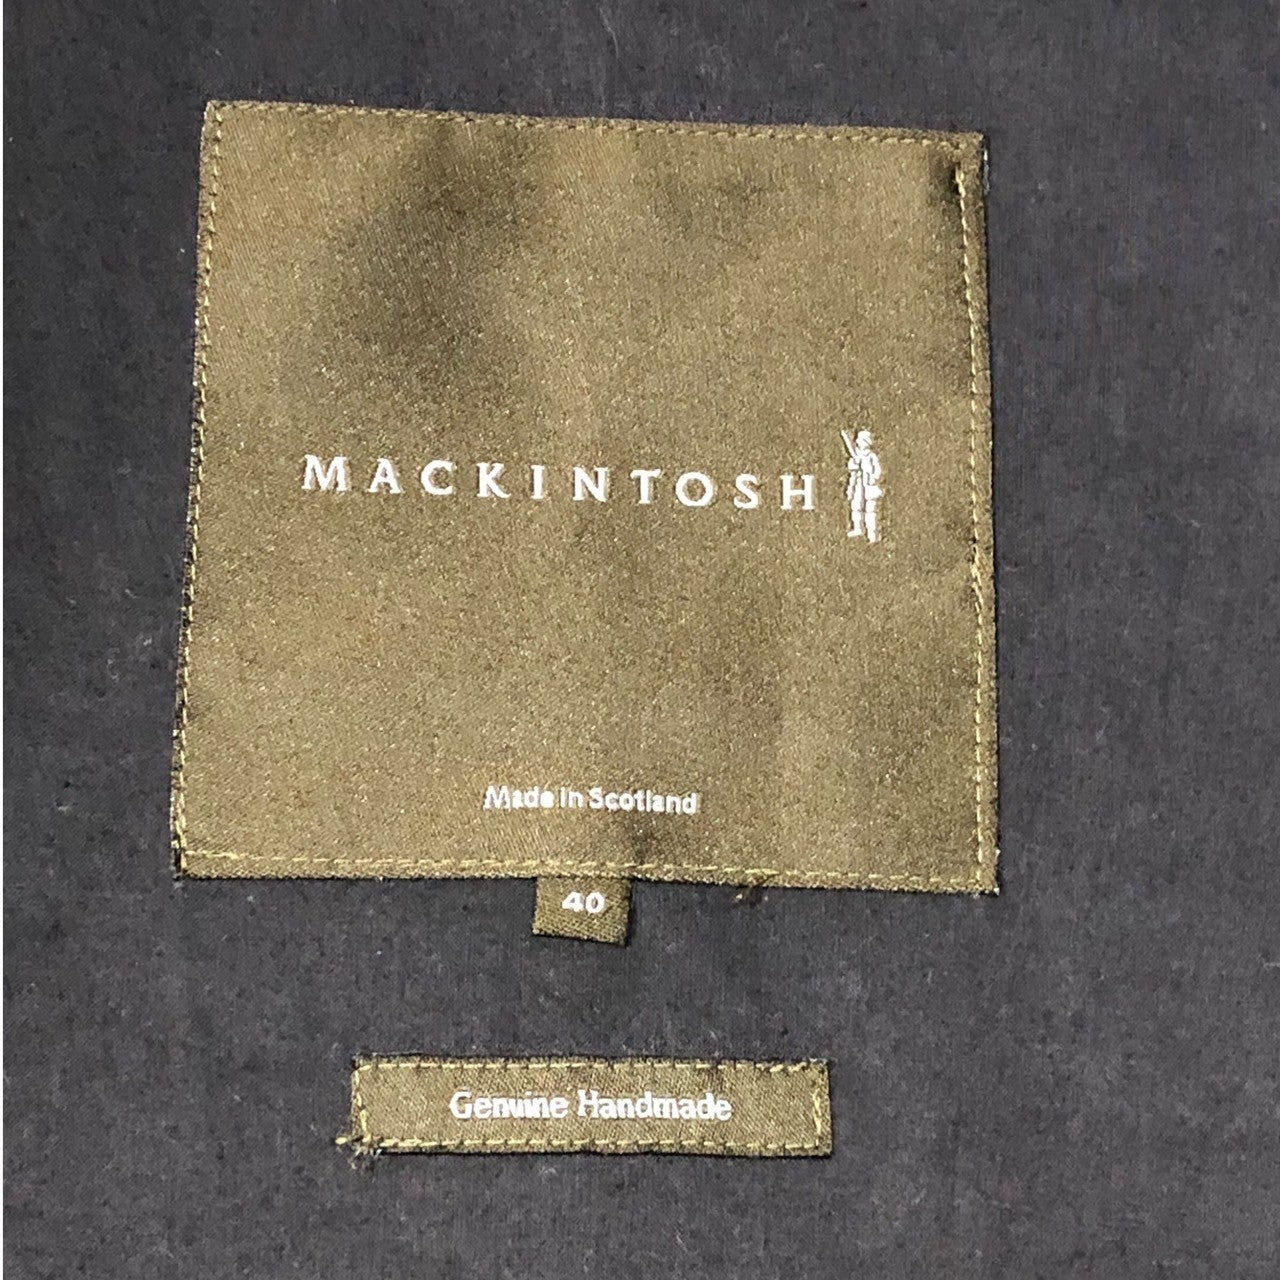 MACKINTOSH(マッキントッシュ) rubberized coat ゴム引き ステンカラー コート  40(L程度) グレー